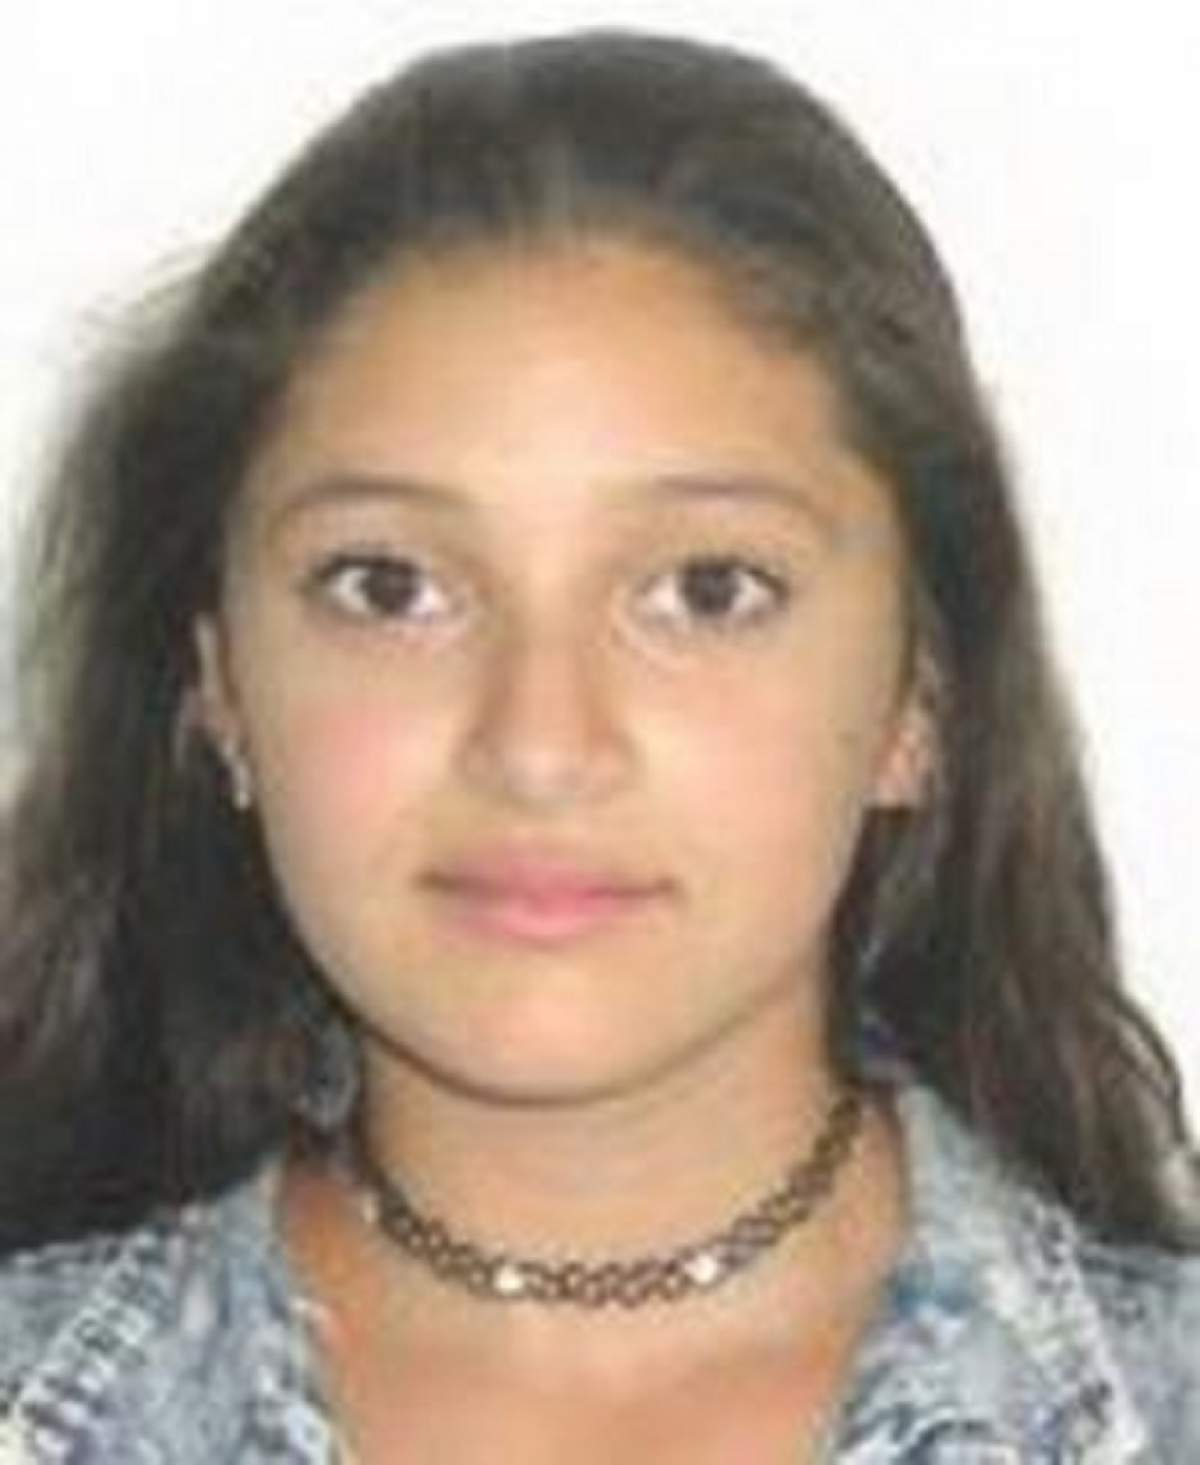 Aţi văzut-o? O adolescentă de 15 ani, din Bihor, a dispărut!